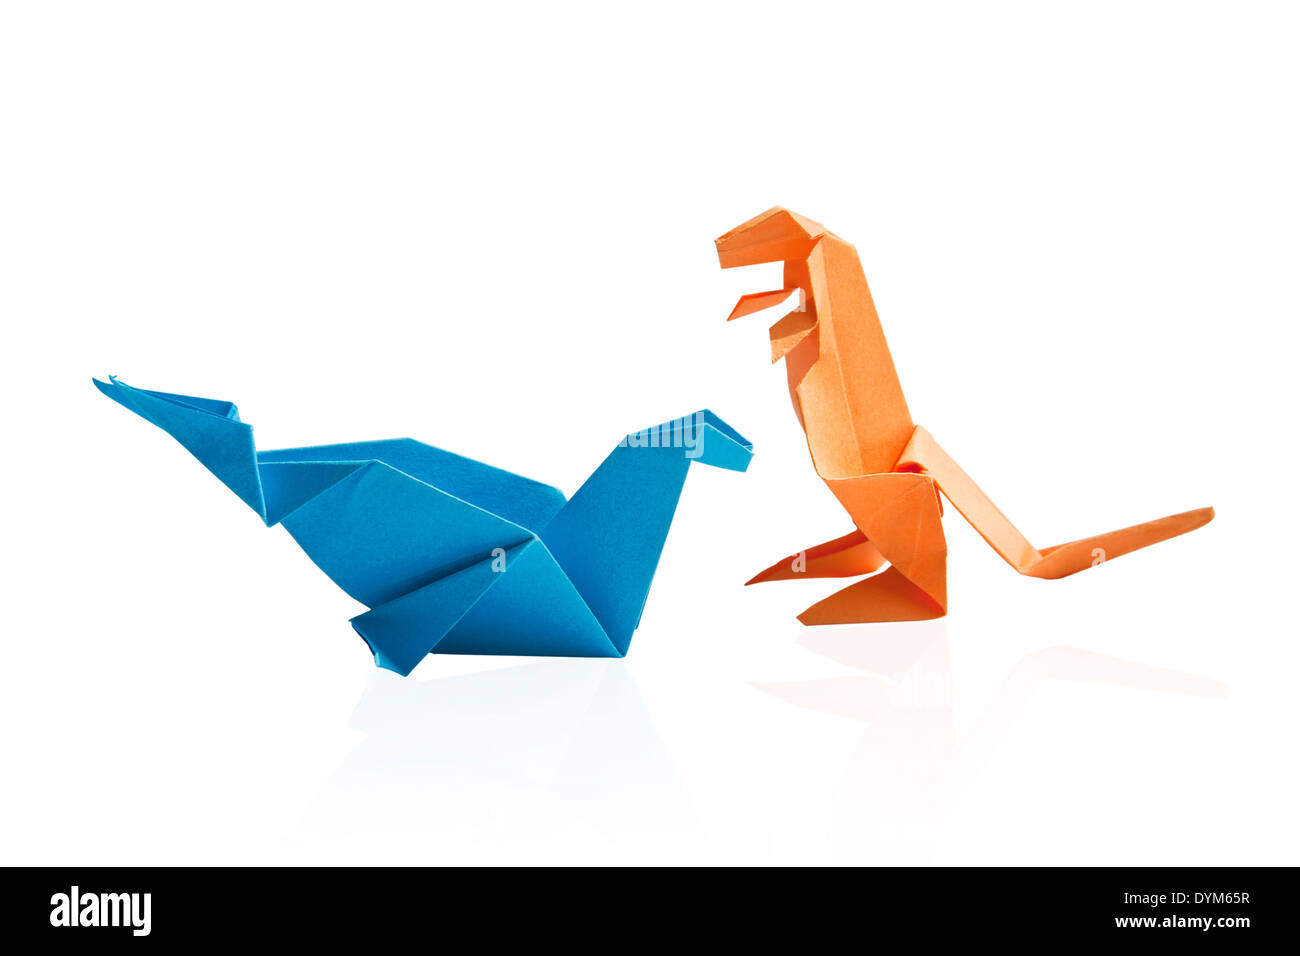 Blue and orange origami dinosaur isolated on white background. Stock Photo